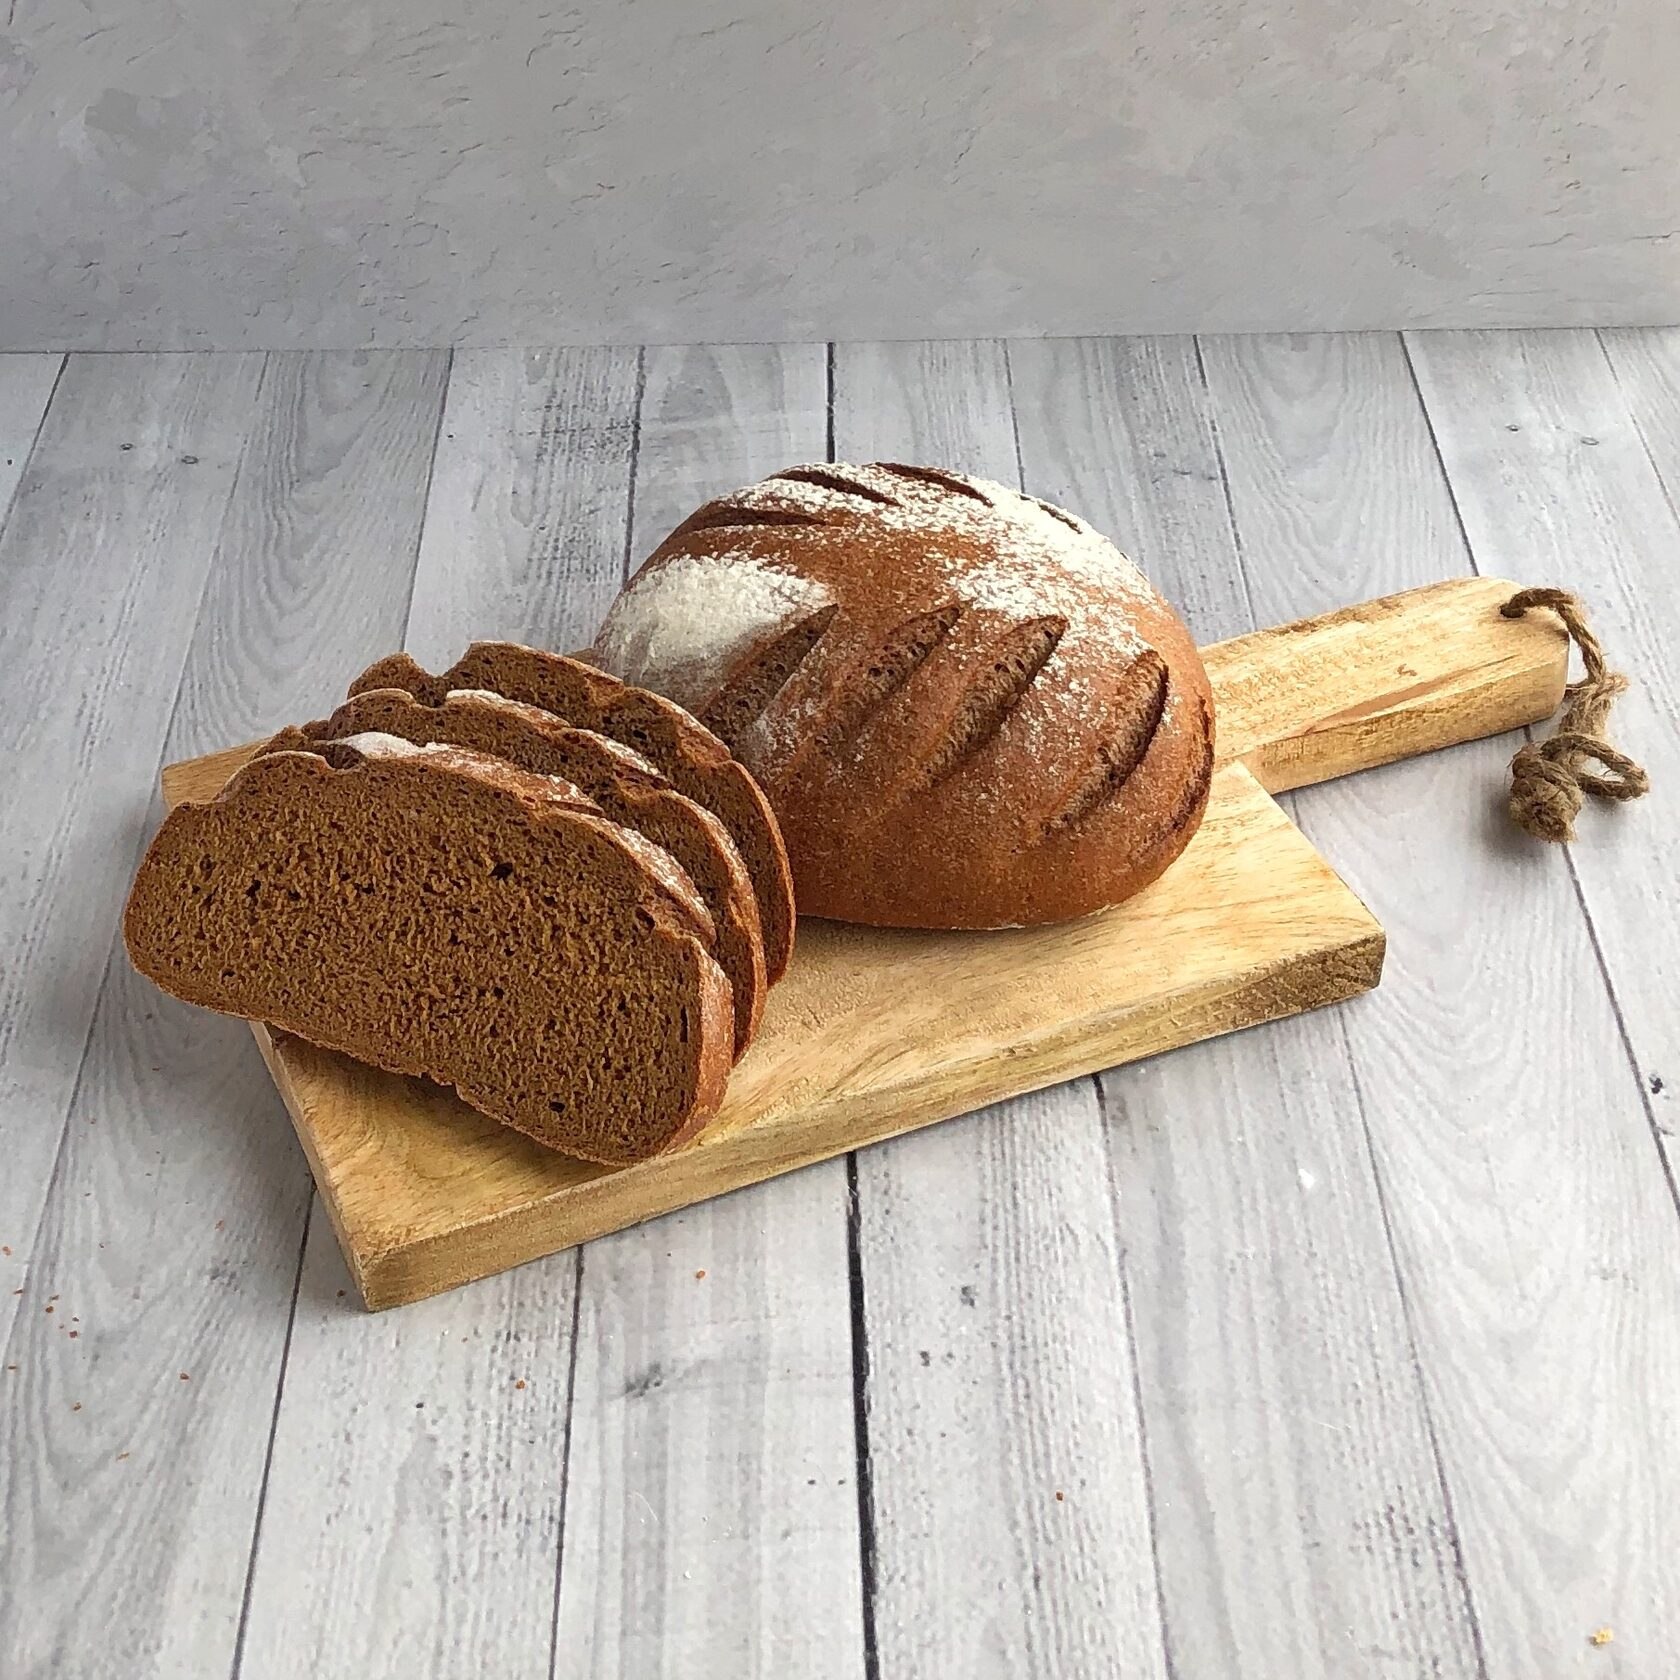 Подовый хлеб это какой. Хлеб Дарницкий подовый. Хлеб ржаной подовый. Хлеб Кандринский, подовый 0.65. Пшенично-ржаной хлеб подовый.